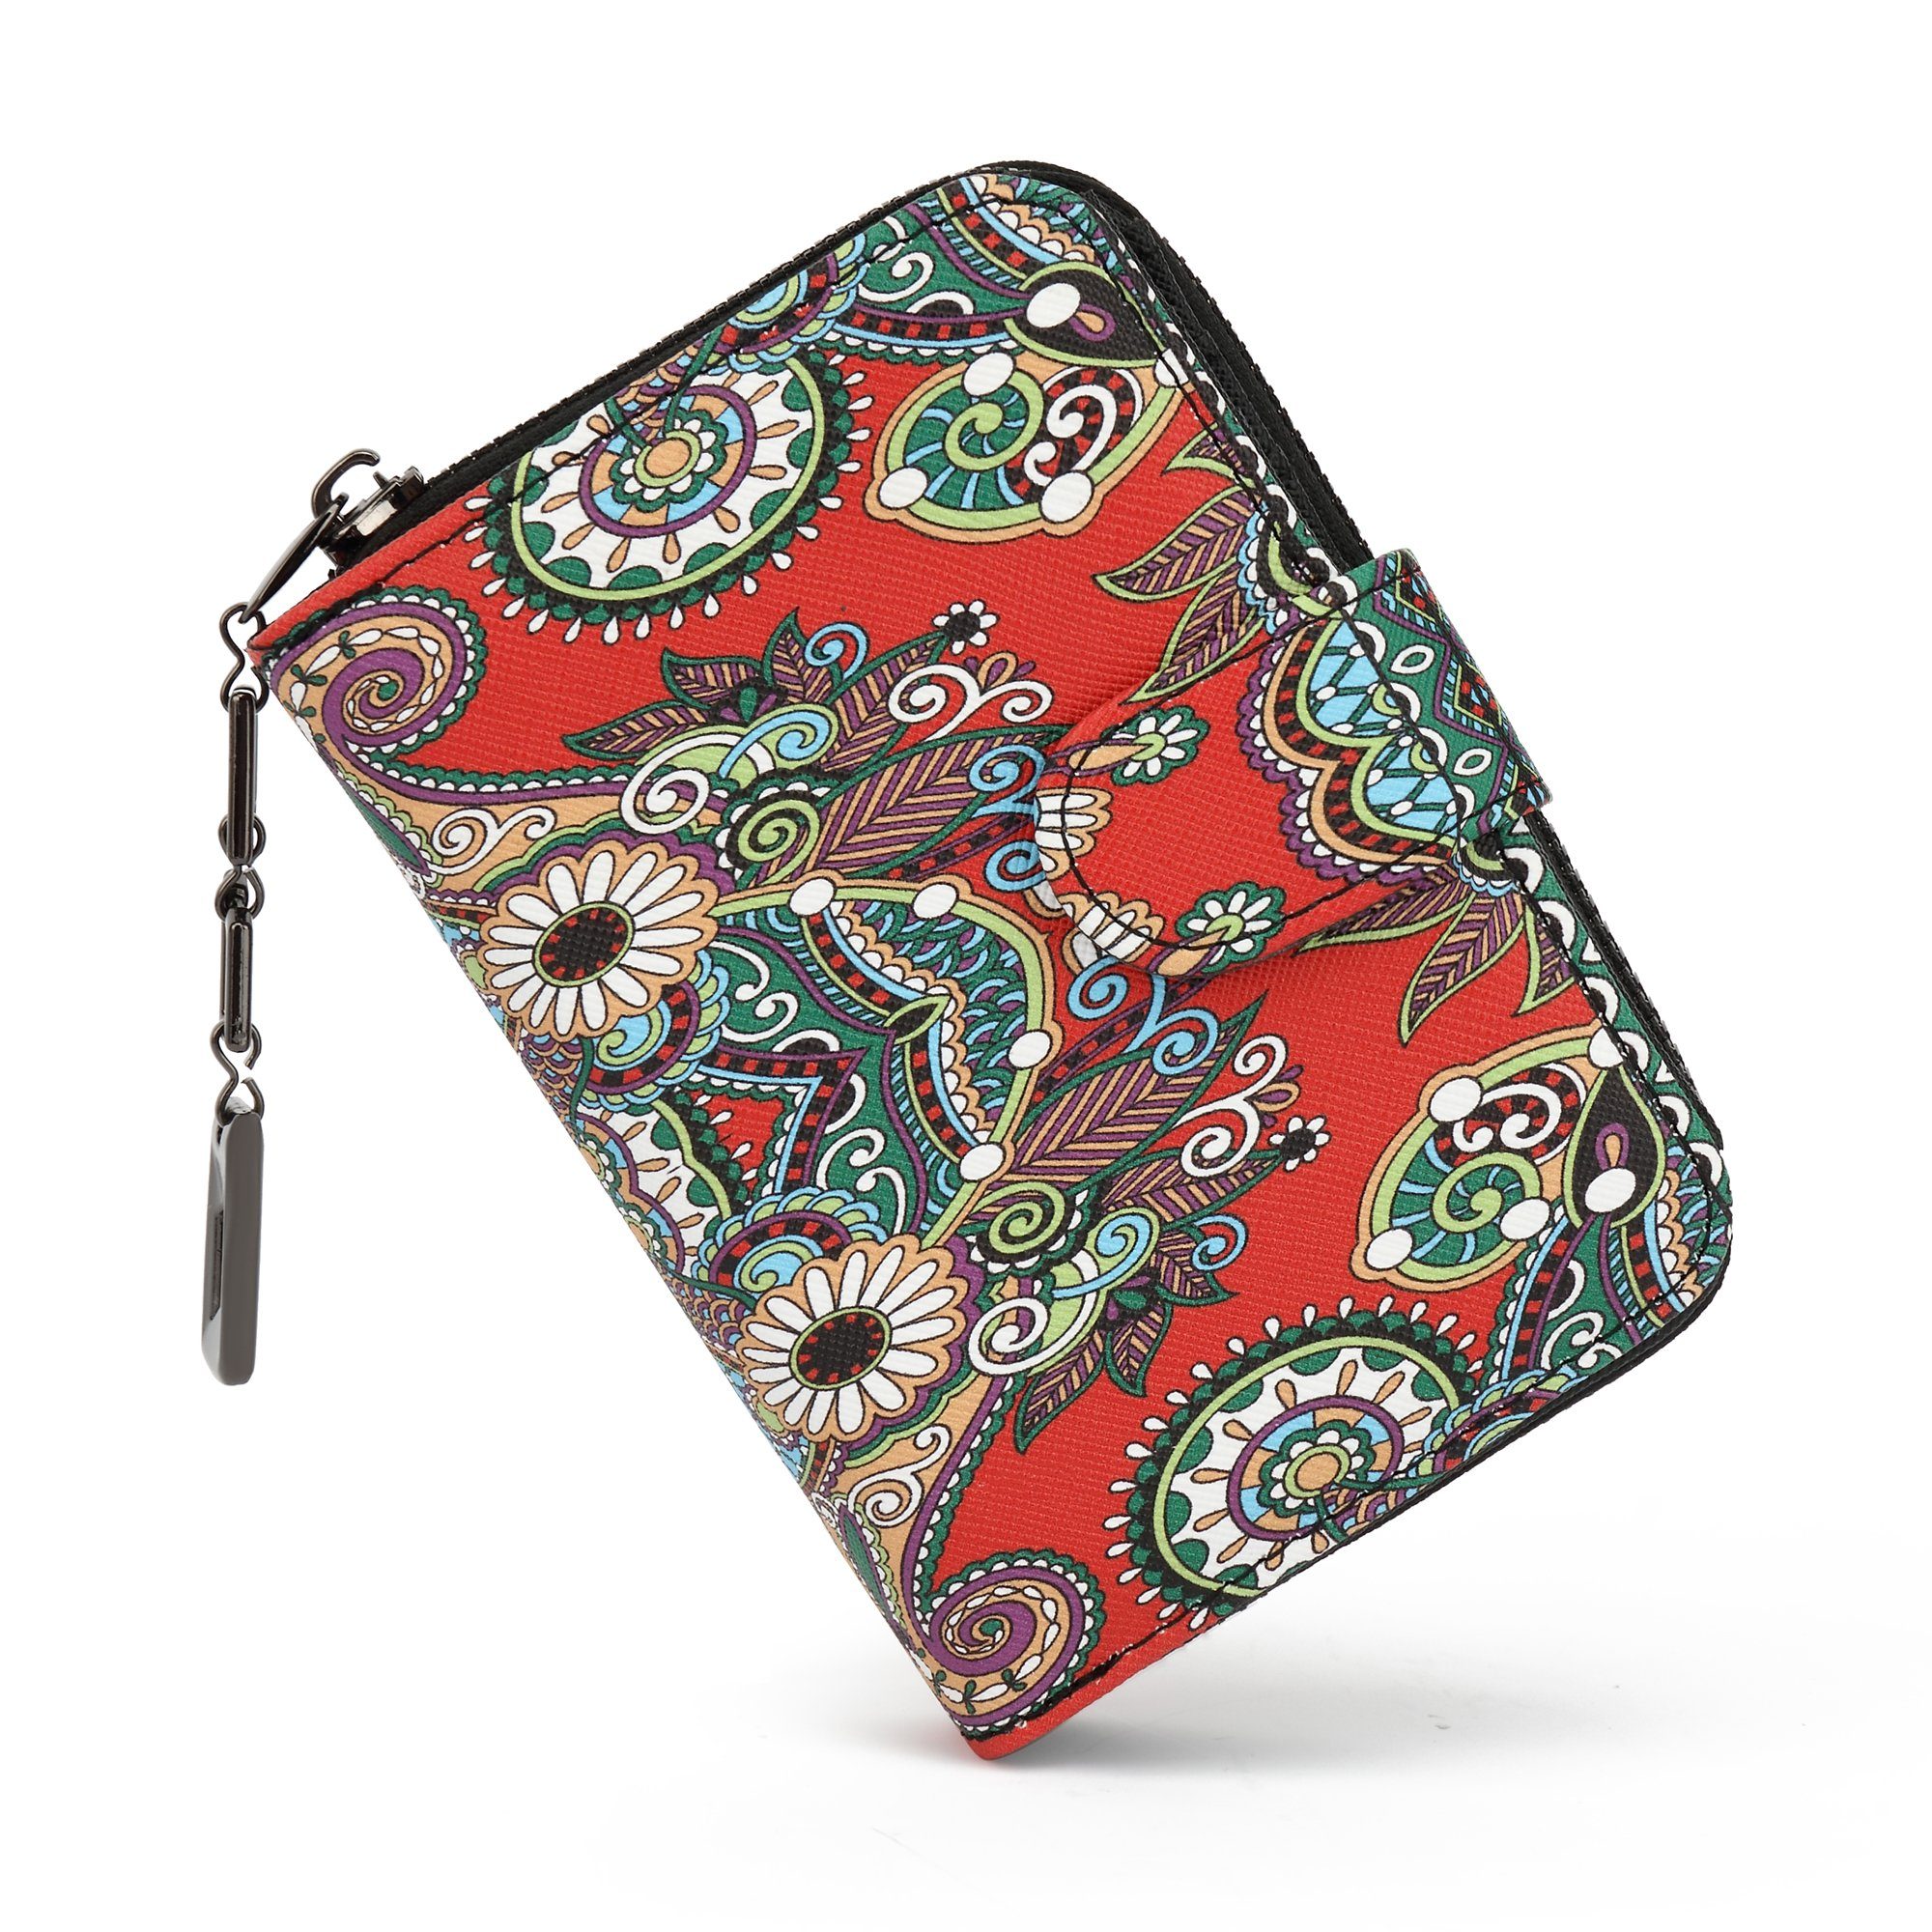 TAN.TOMI Brieftasche Geldbeutel mit Blumen- und Blütenmuster im Mandala Stil, Praktische Aufteilung mit viel Platz Saflor-MC5